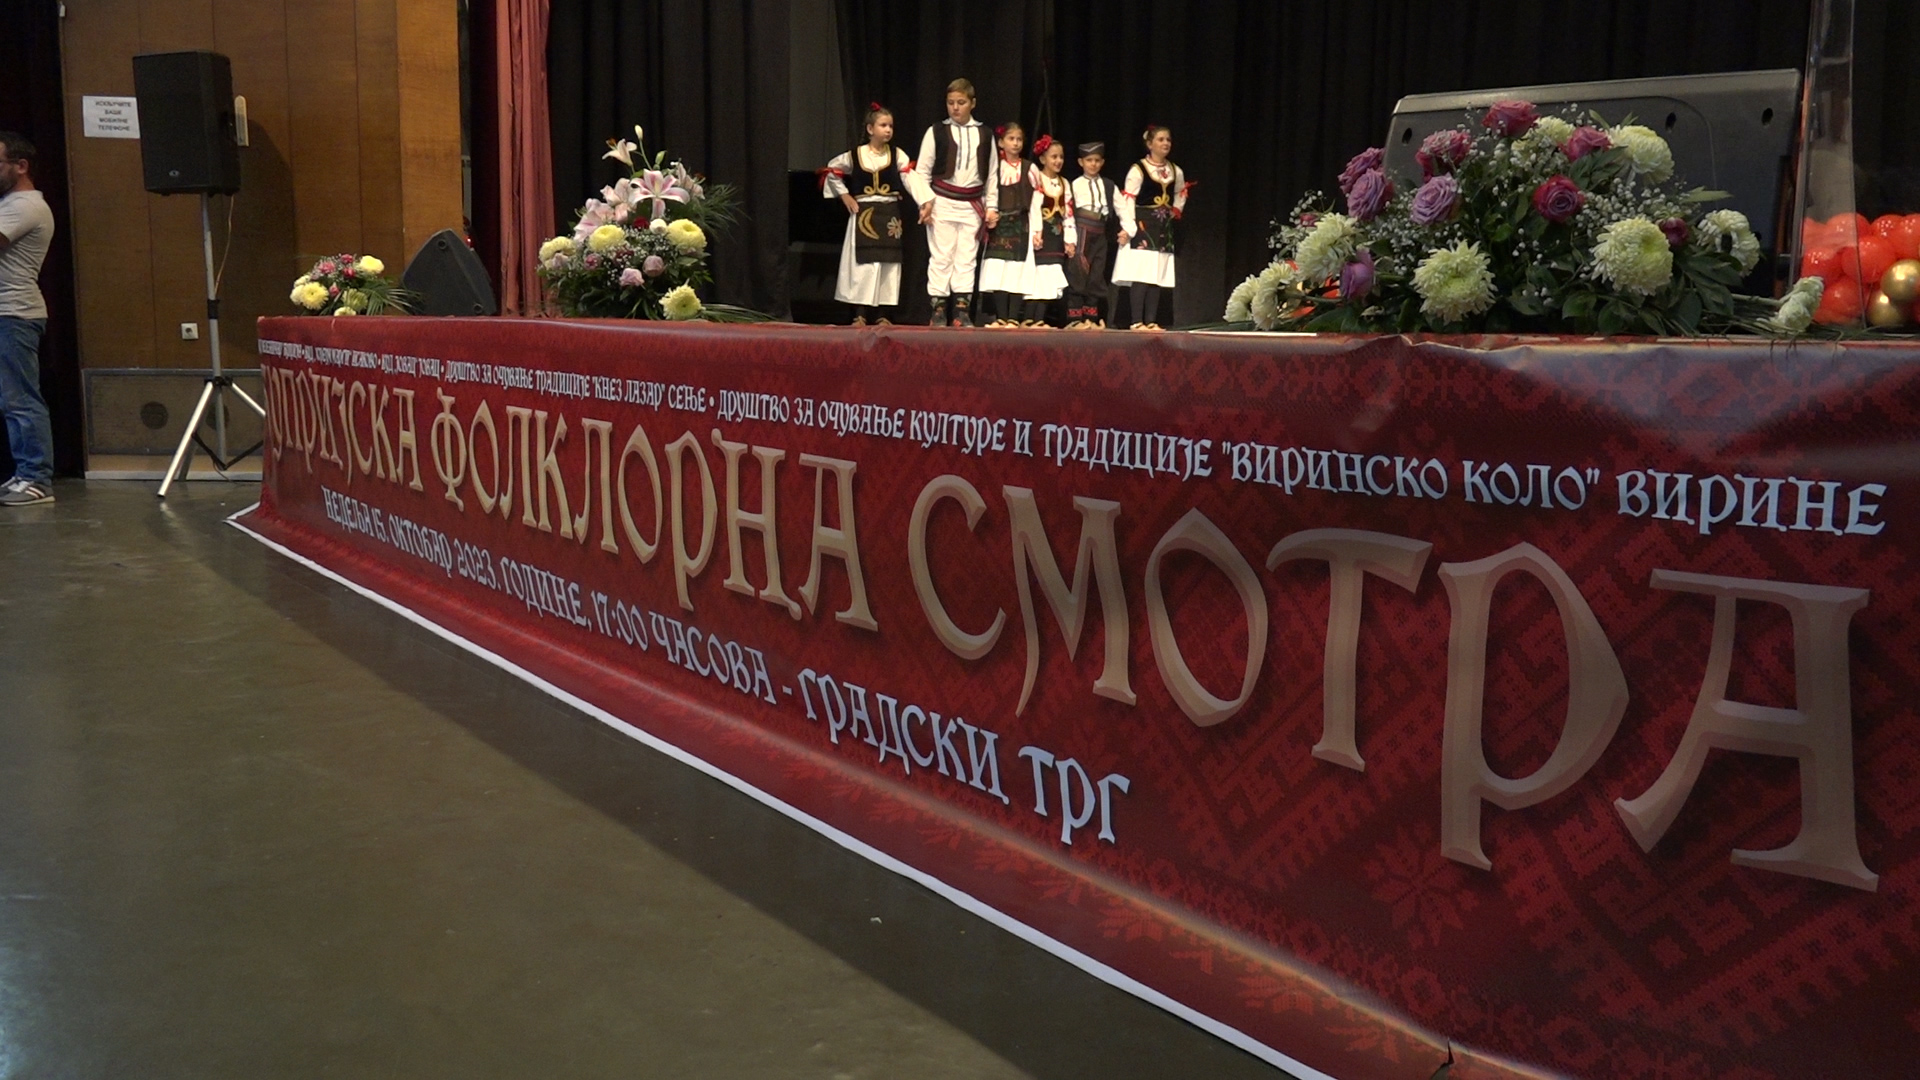 Folklorna smotra povodom 10. godišnjice KUD-a “Moravac” ove subote u Gornjem Vidovu